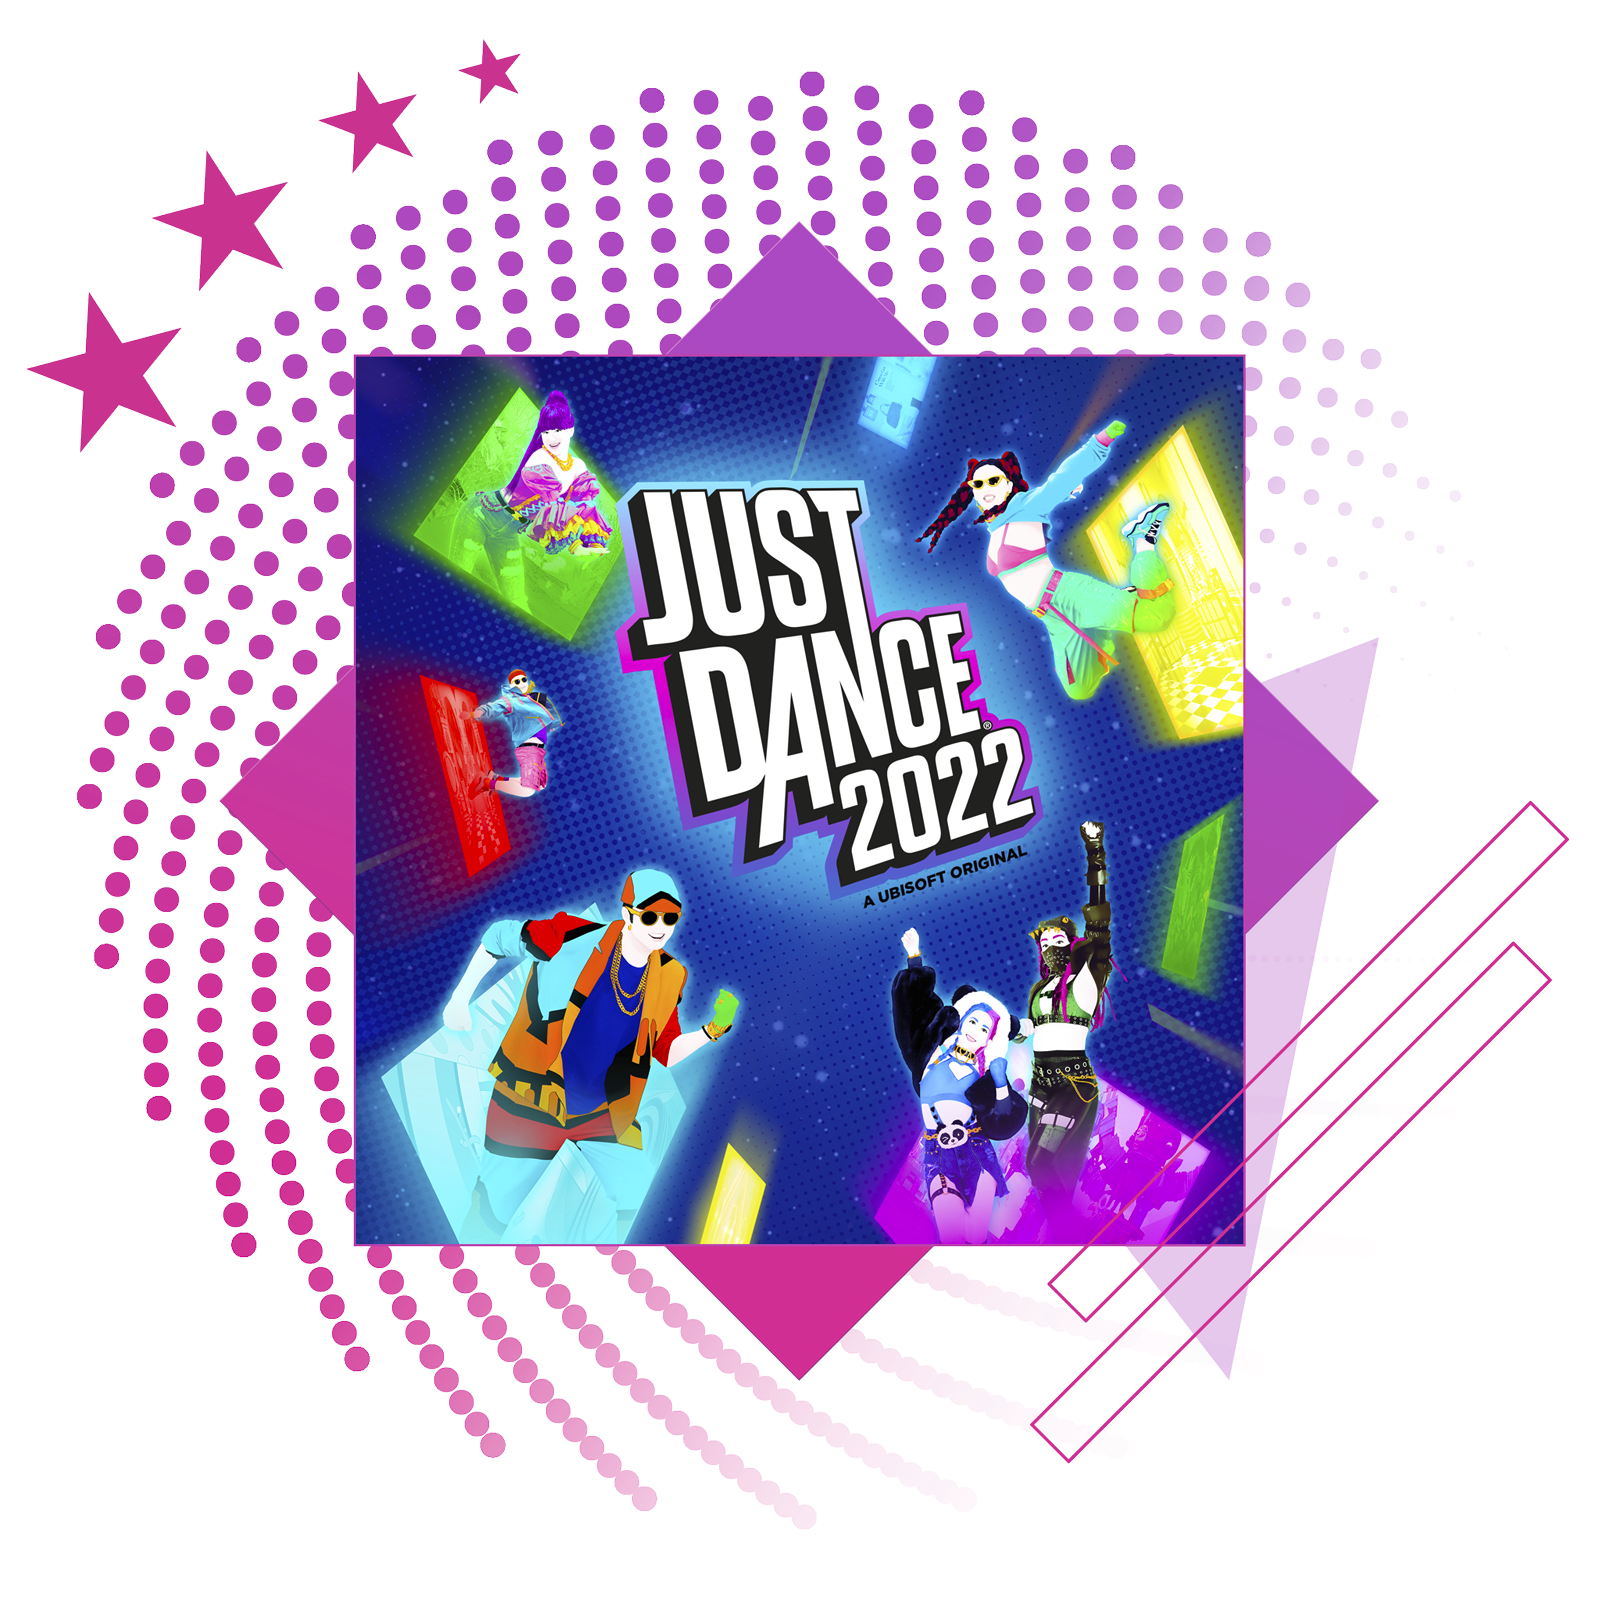 Лучшие ритмичные игры – изображение с обложкой Just Dance 2022.